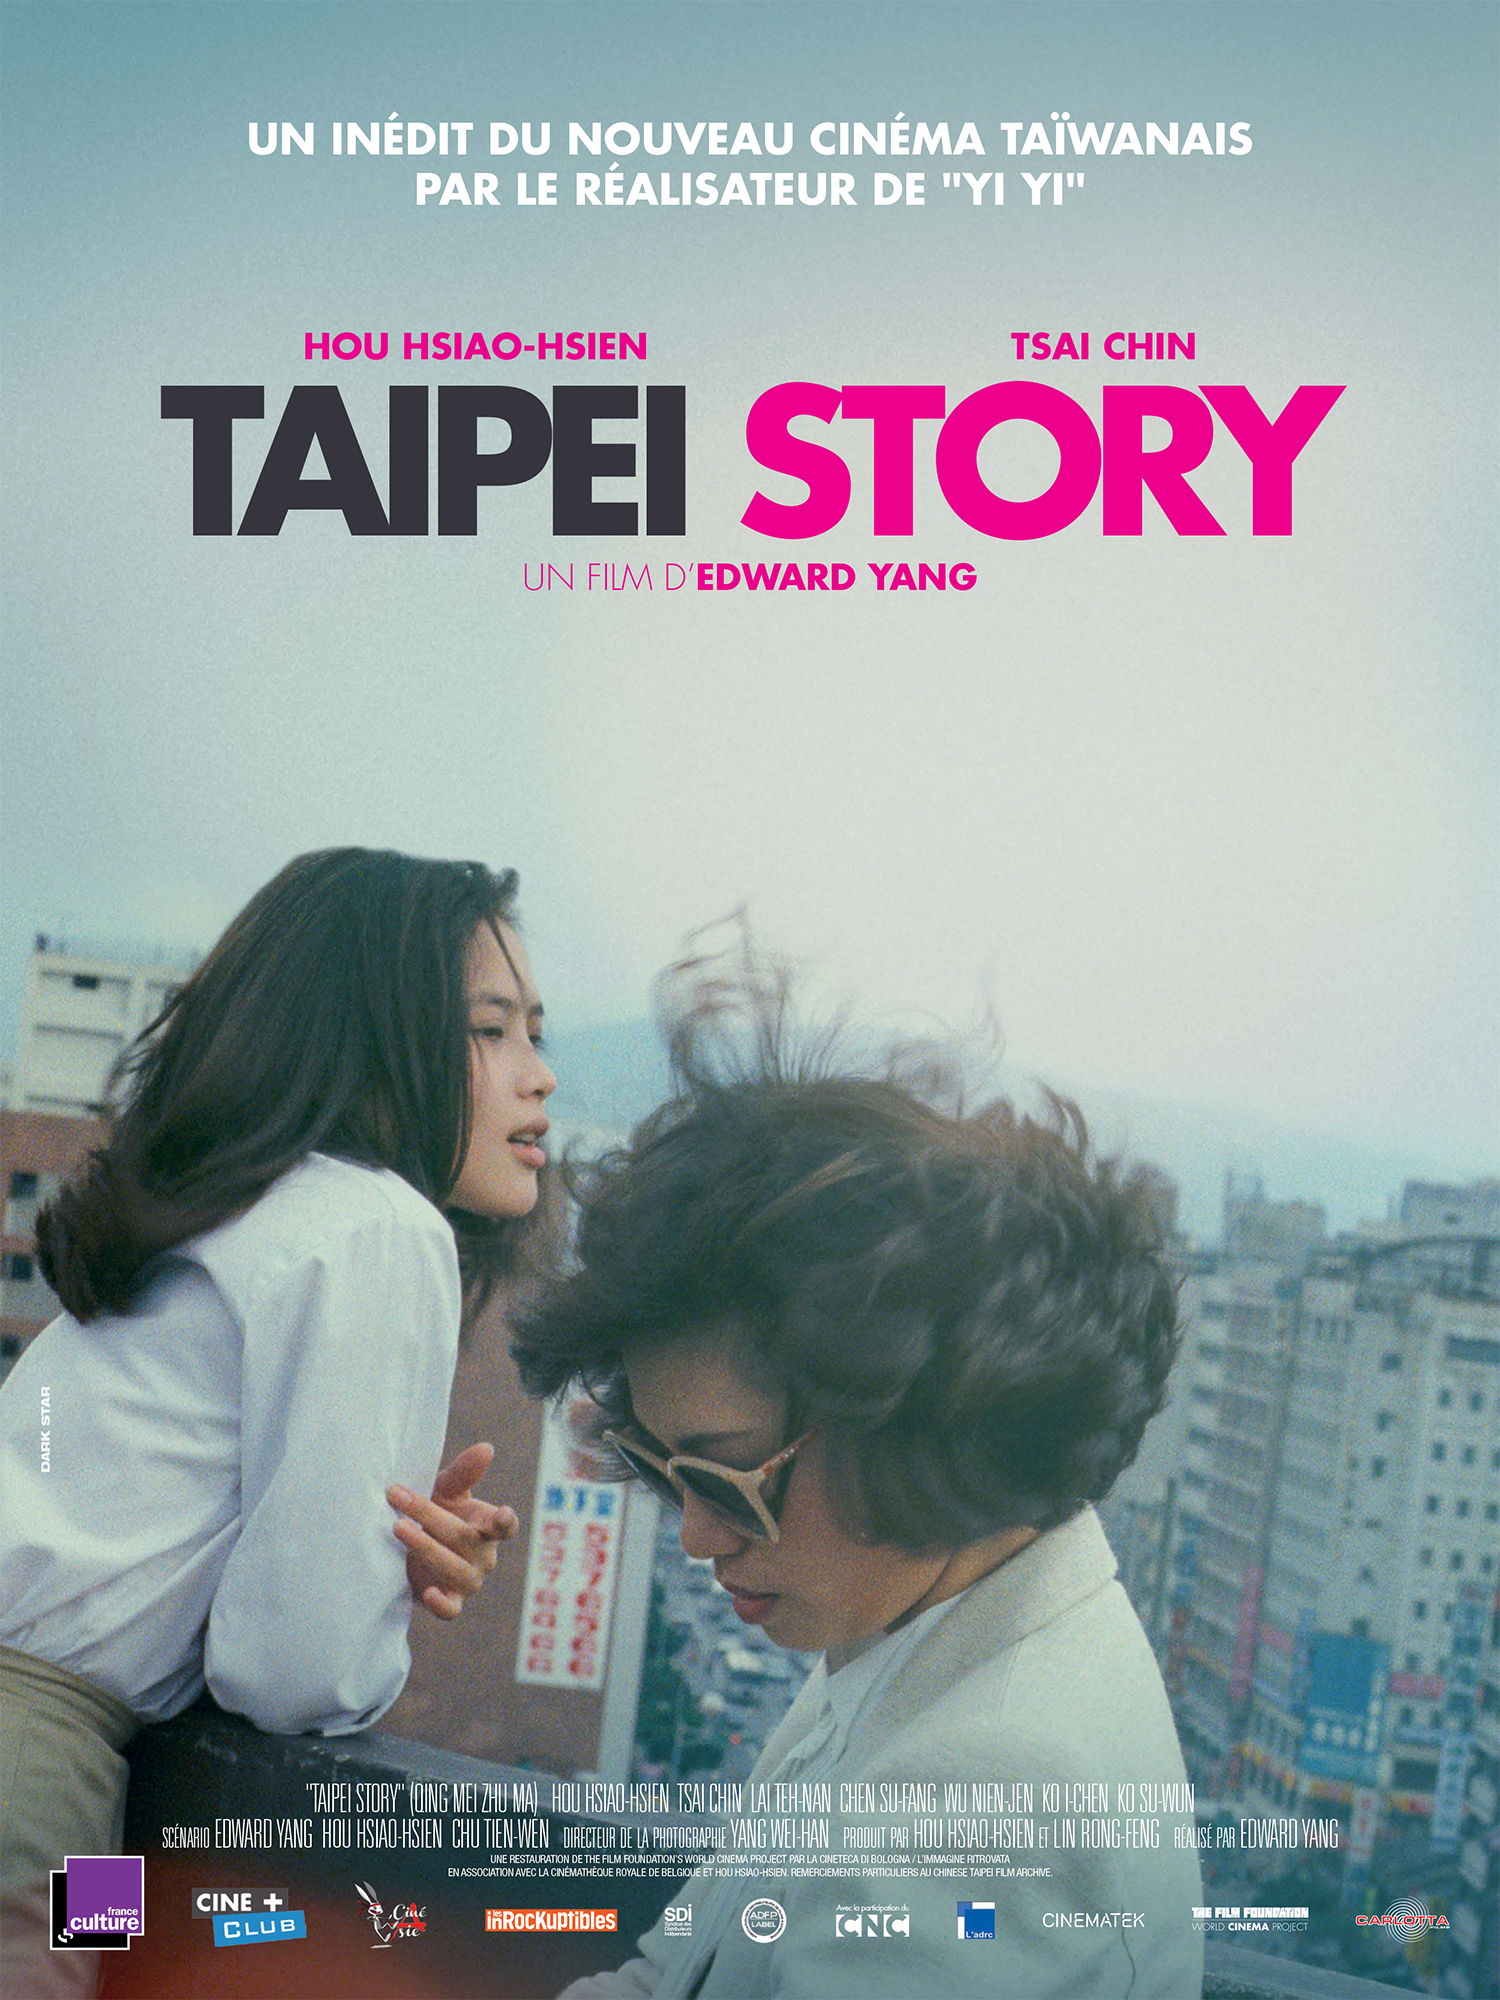 Taipei Story d’Edward Yang, ou les prémices de la Nouvelle Vague taïwanaise.